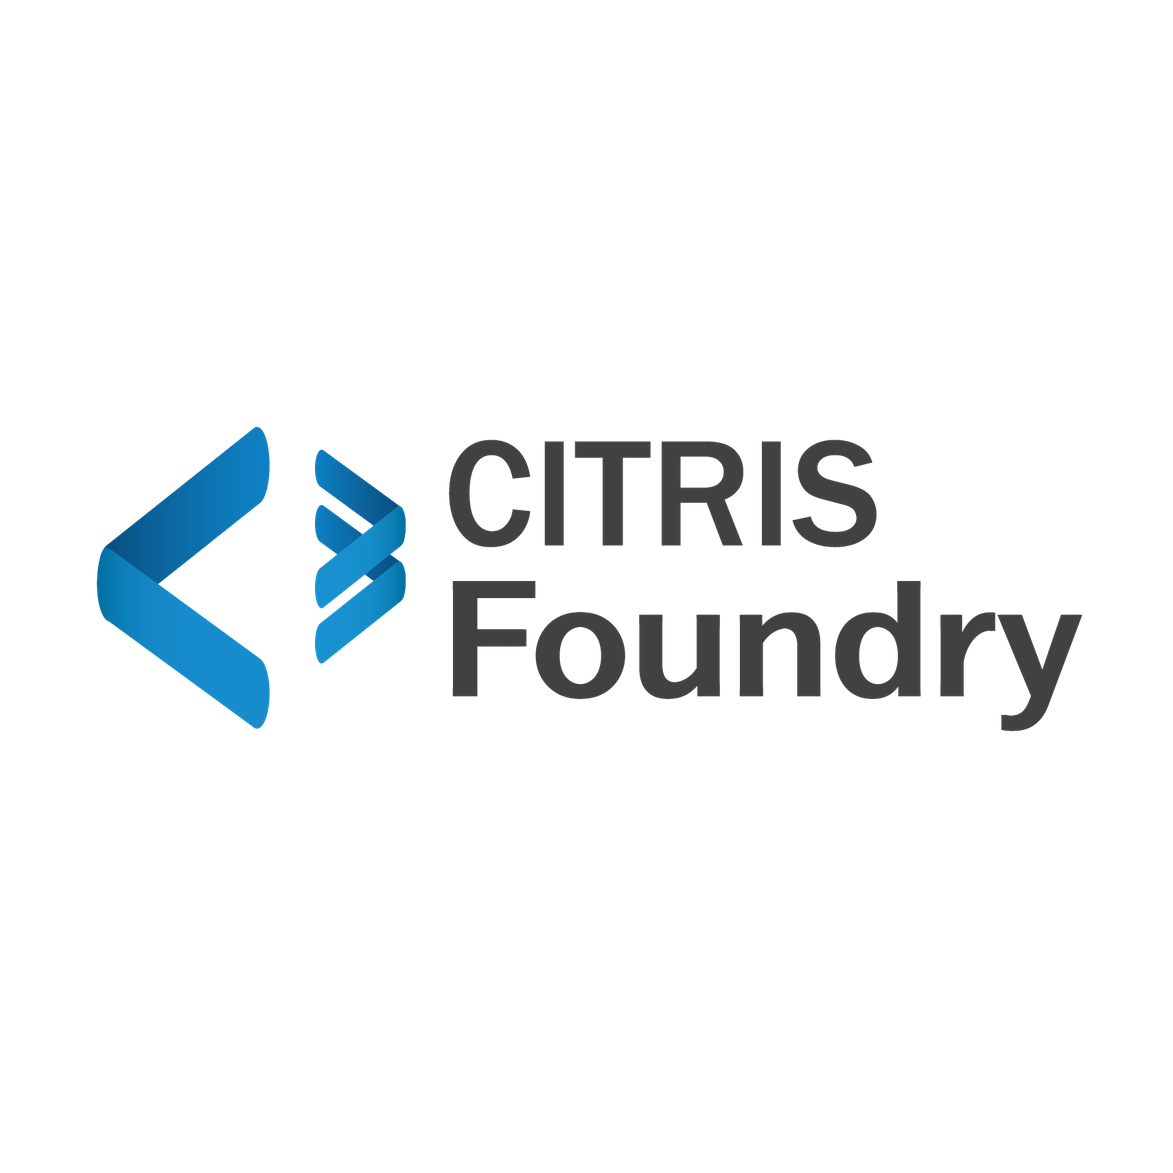 CITRIS-Foundry-wordmark-WEBSITE